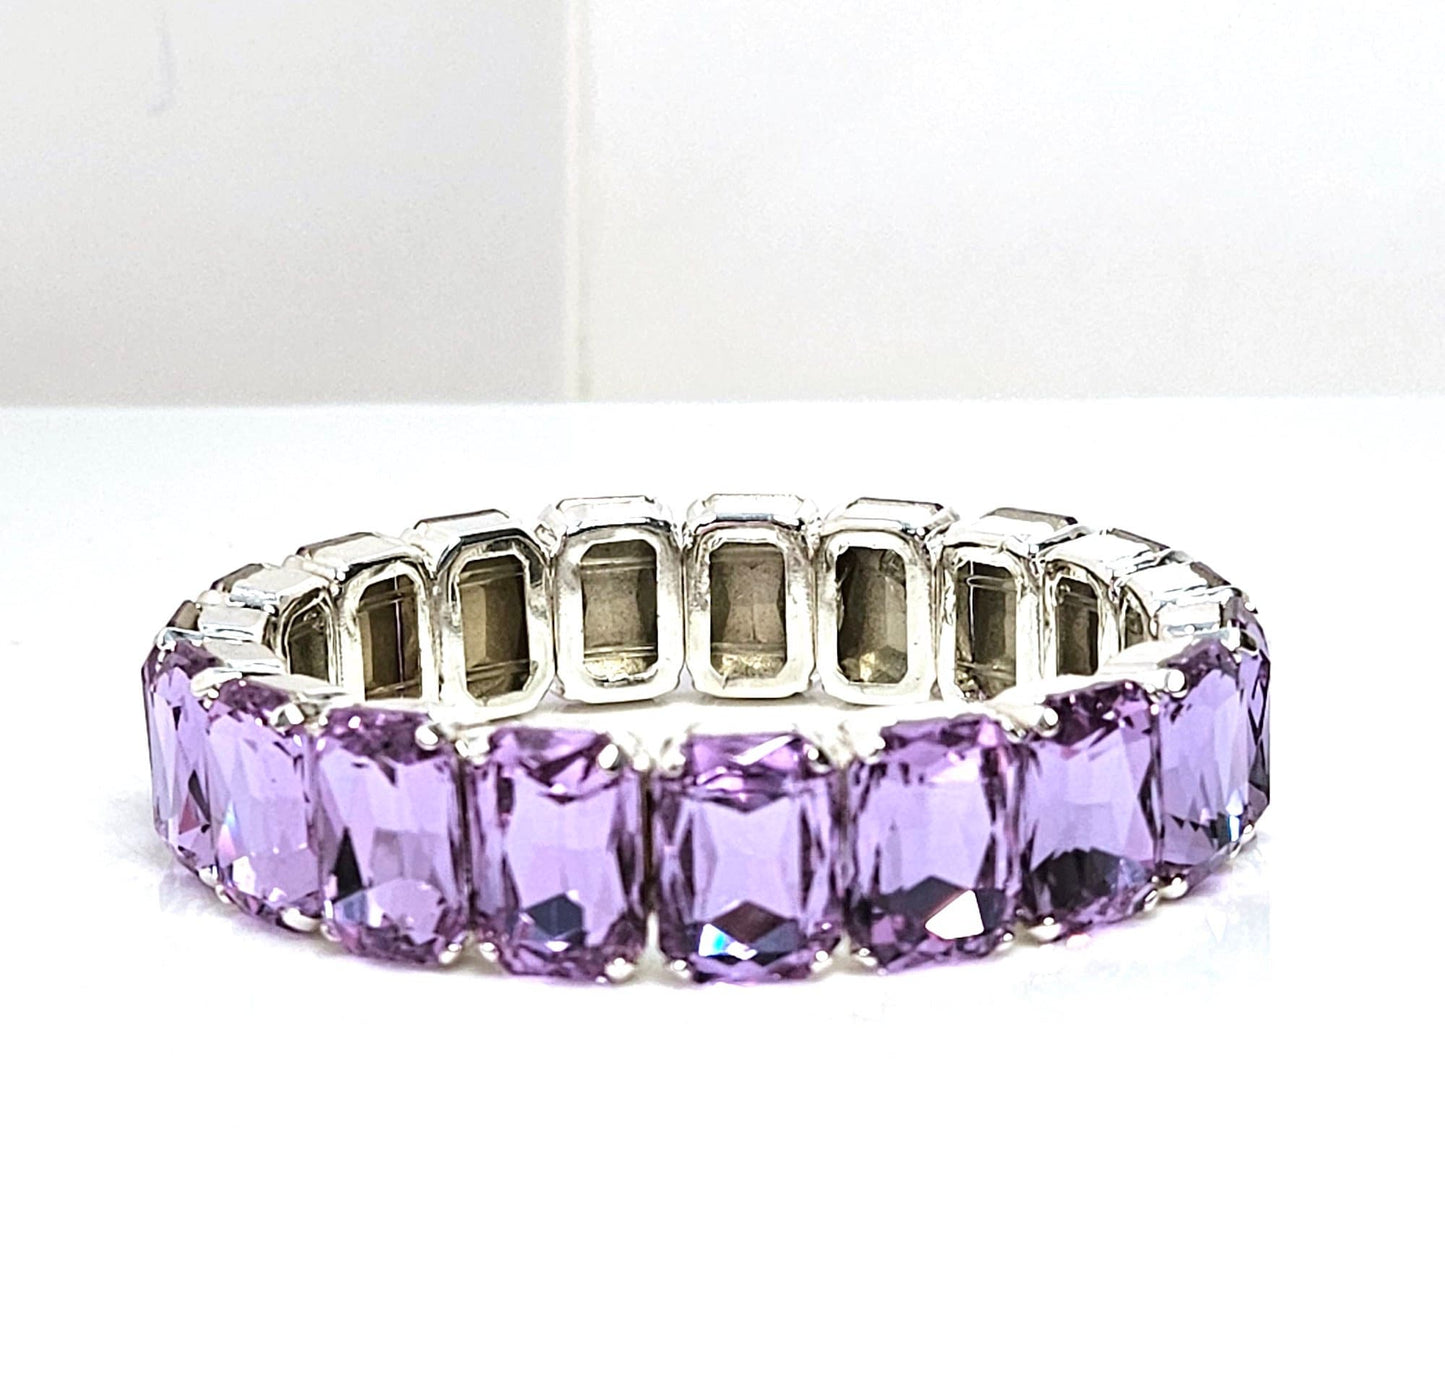 Rose Peach and Violet Crystal Bracelets, Stretch Bracelets, Wedding Jewelry, Rectangle Statement Bracelet, Bracelets For Women